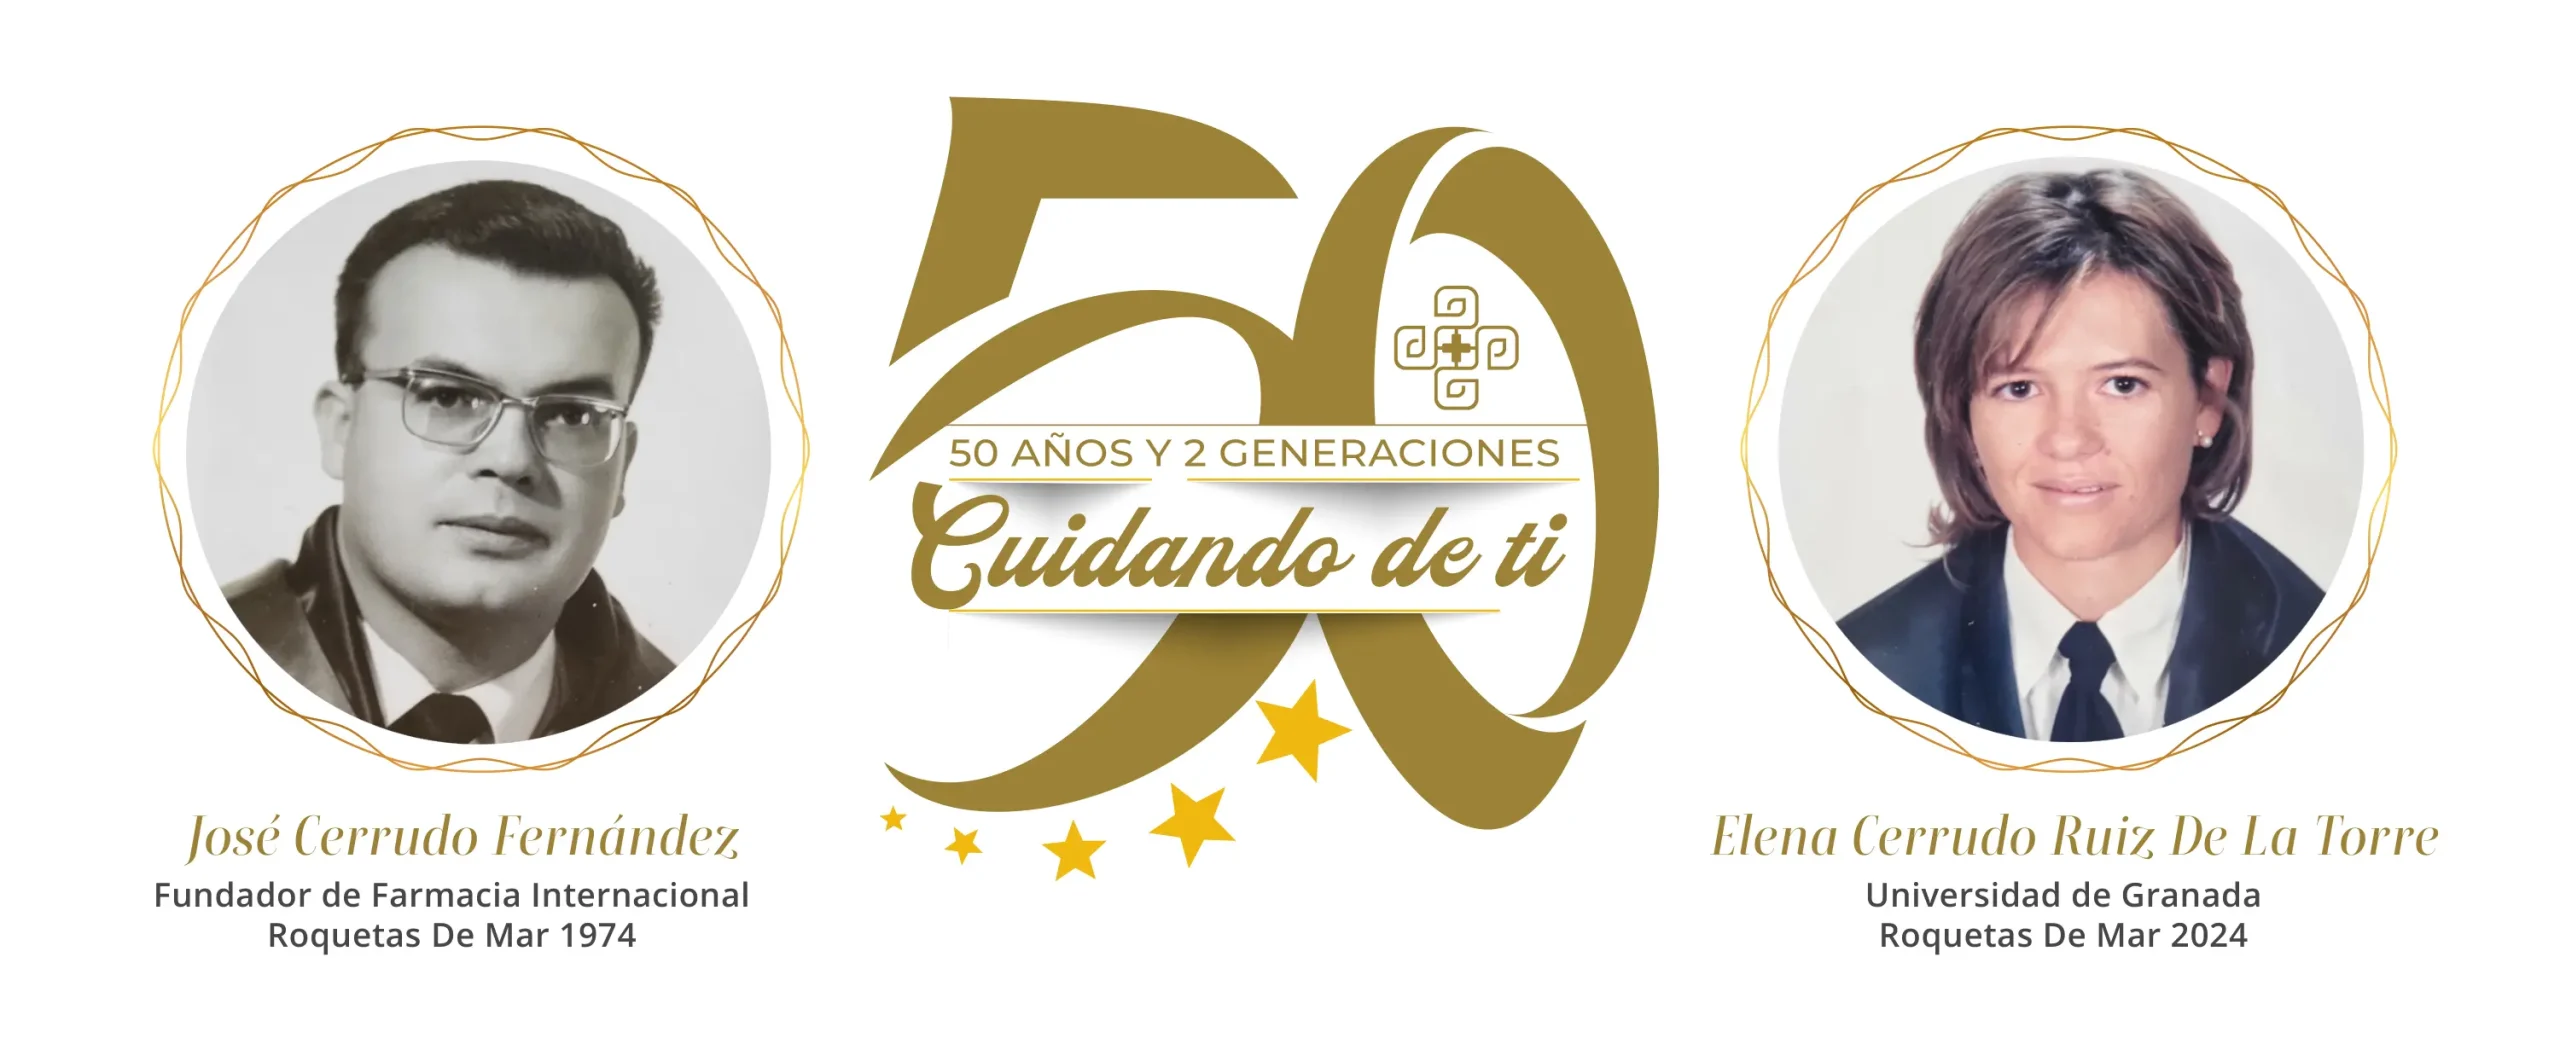 Celebramos el 50 aniversario de la fundación de la farmacia Internacional de Roquetas